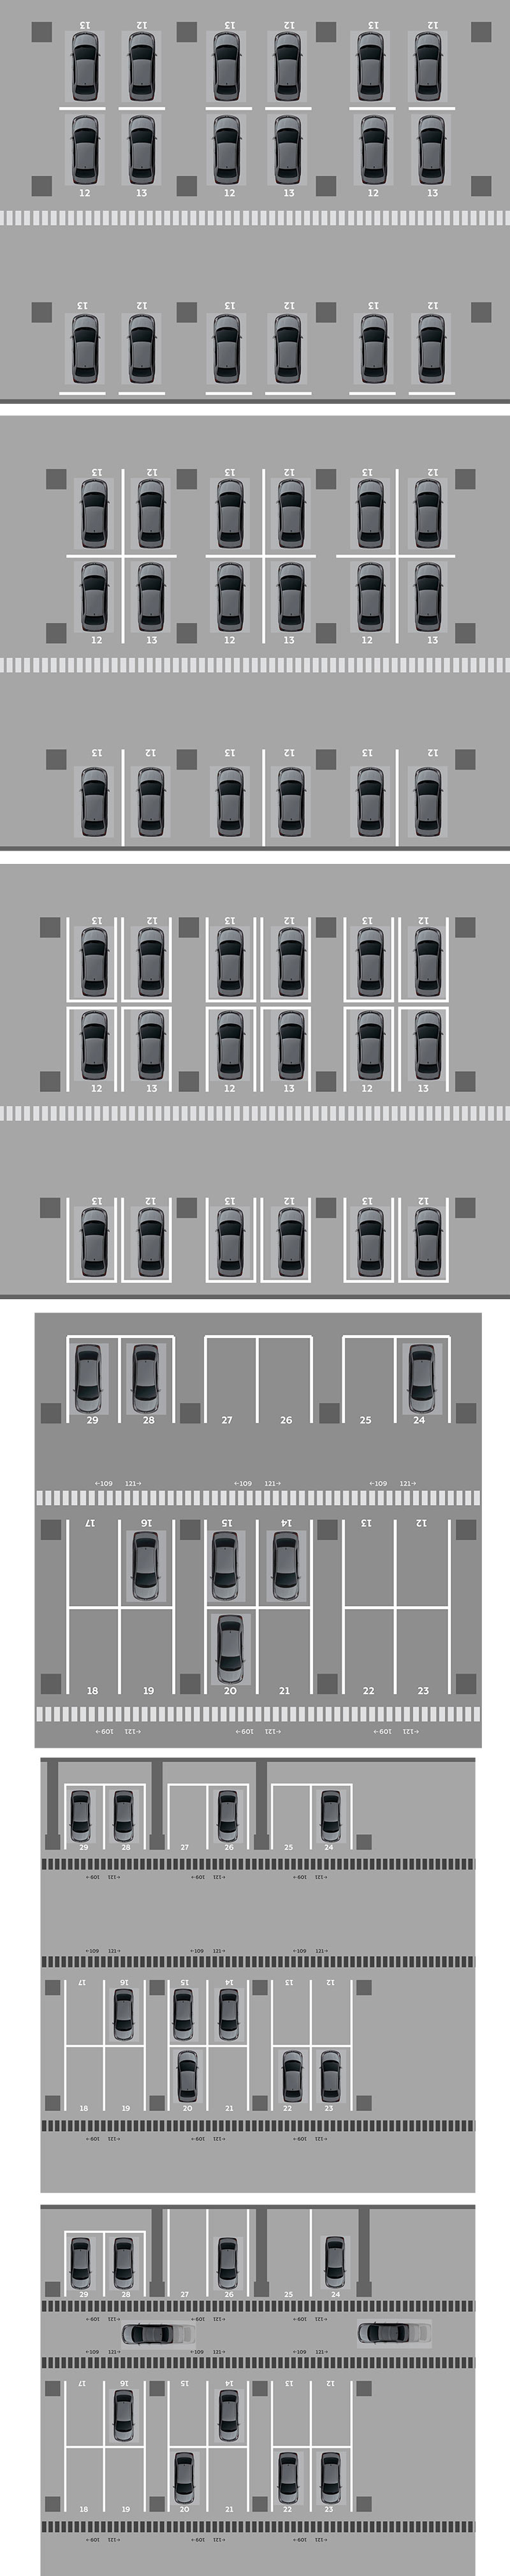 fc krasnodar process parking